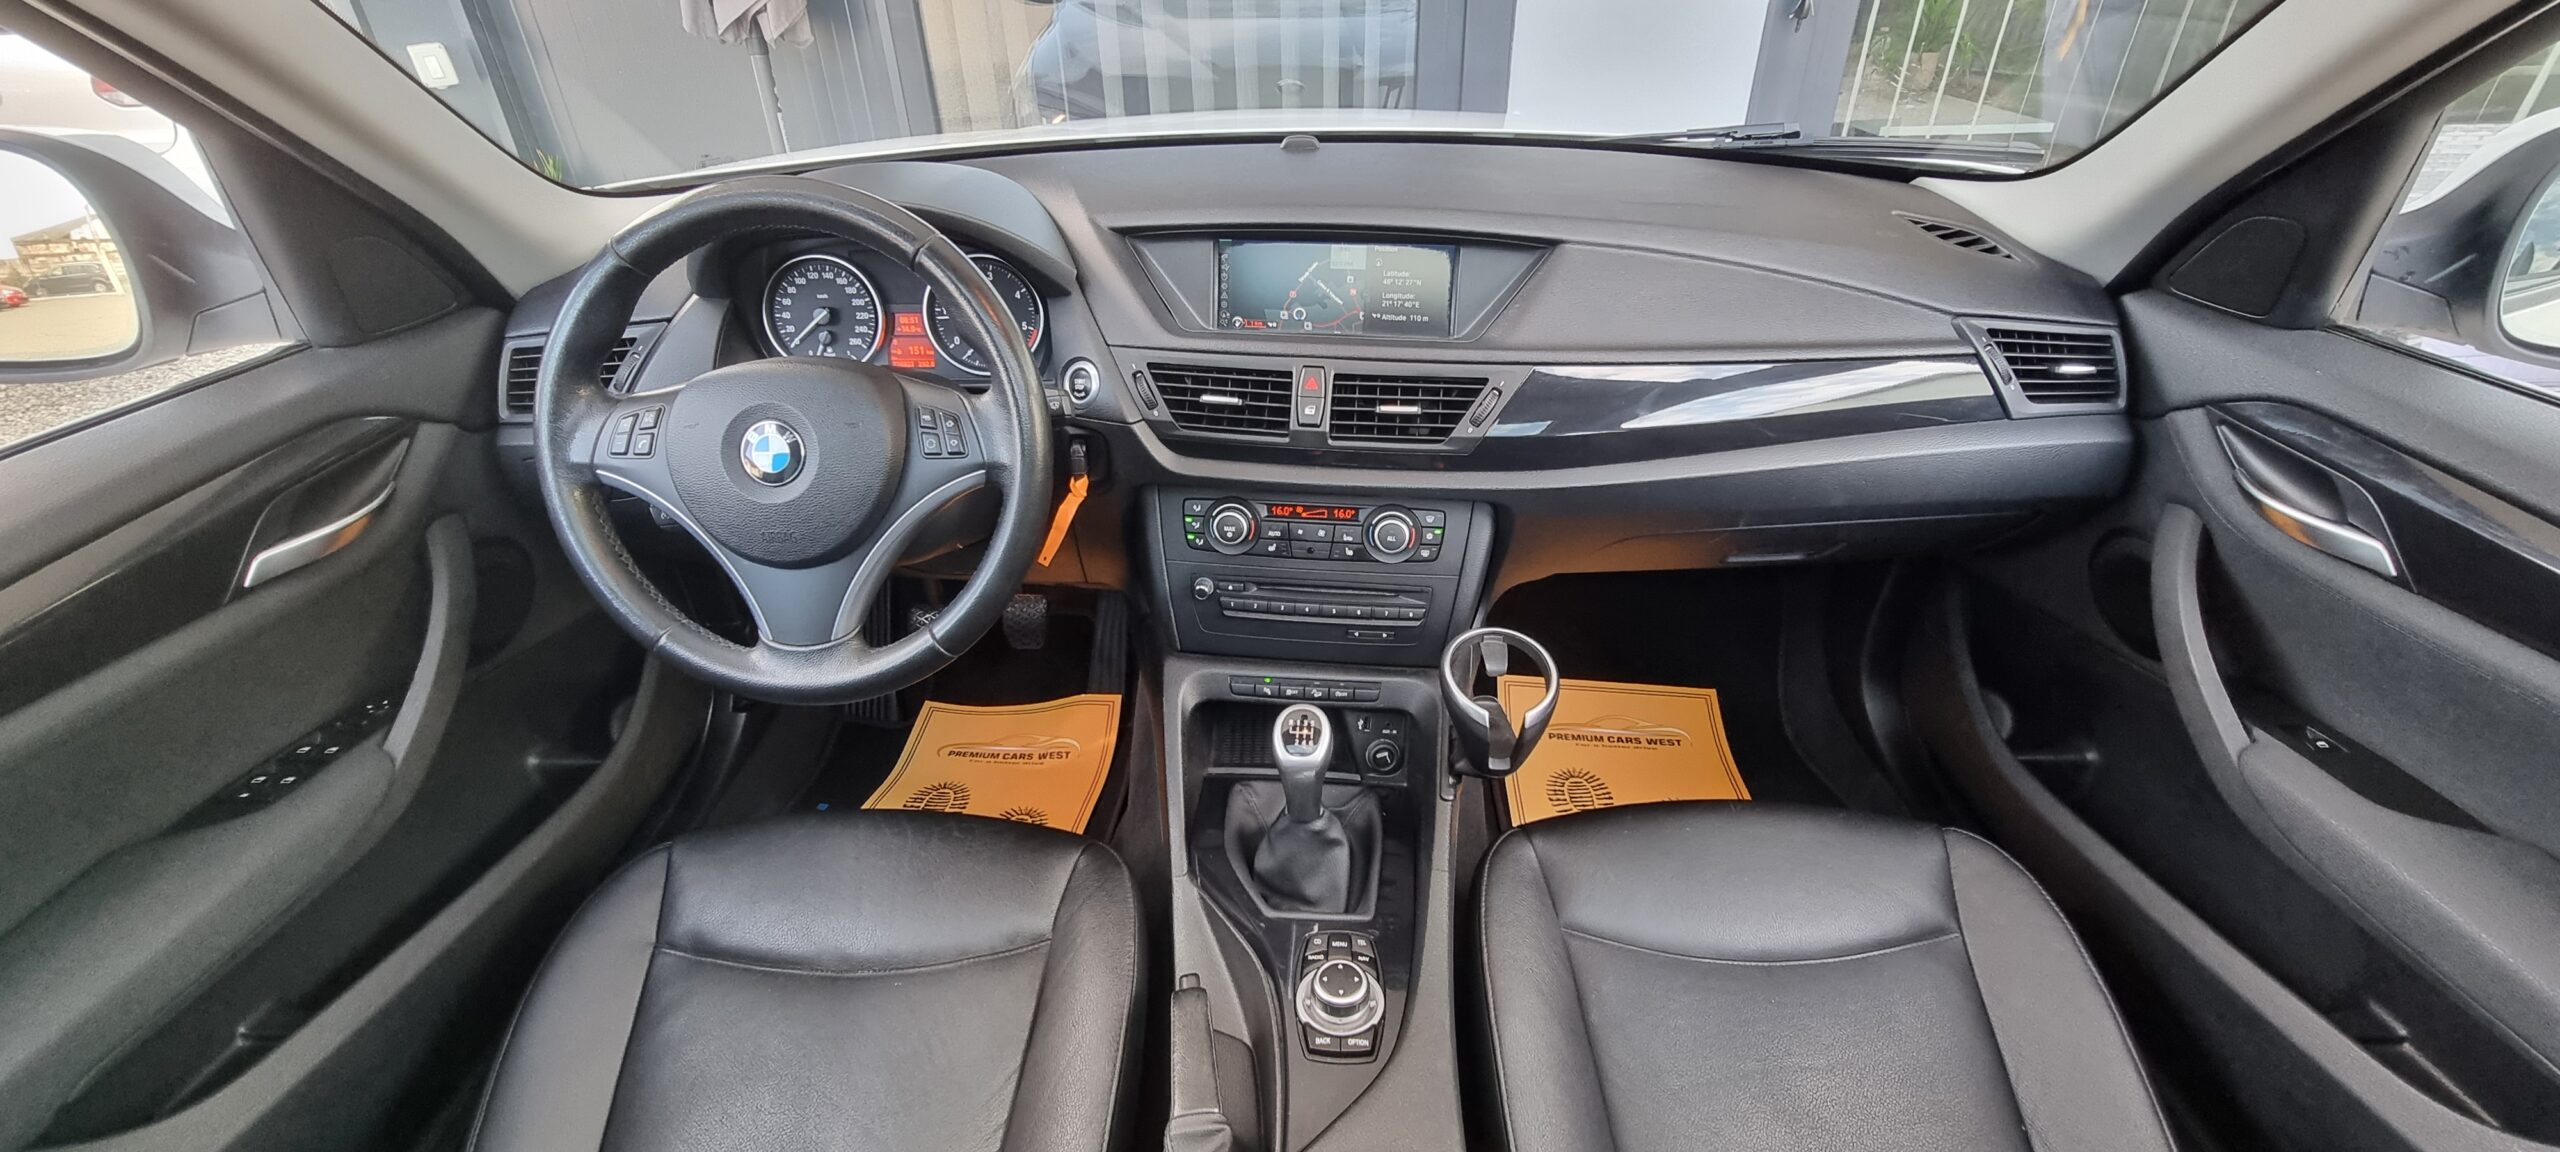 BMW X1(X DRIVE), 2.0 DIESEL,143 CP, EURO 5, AN 2011